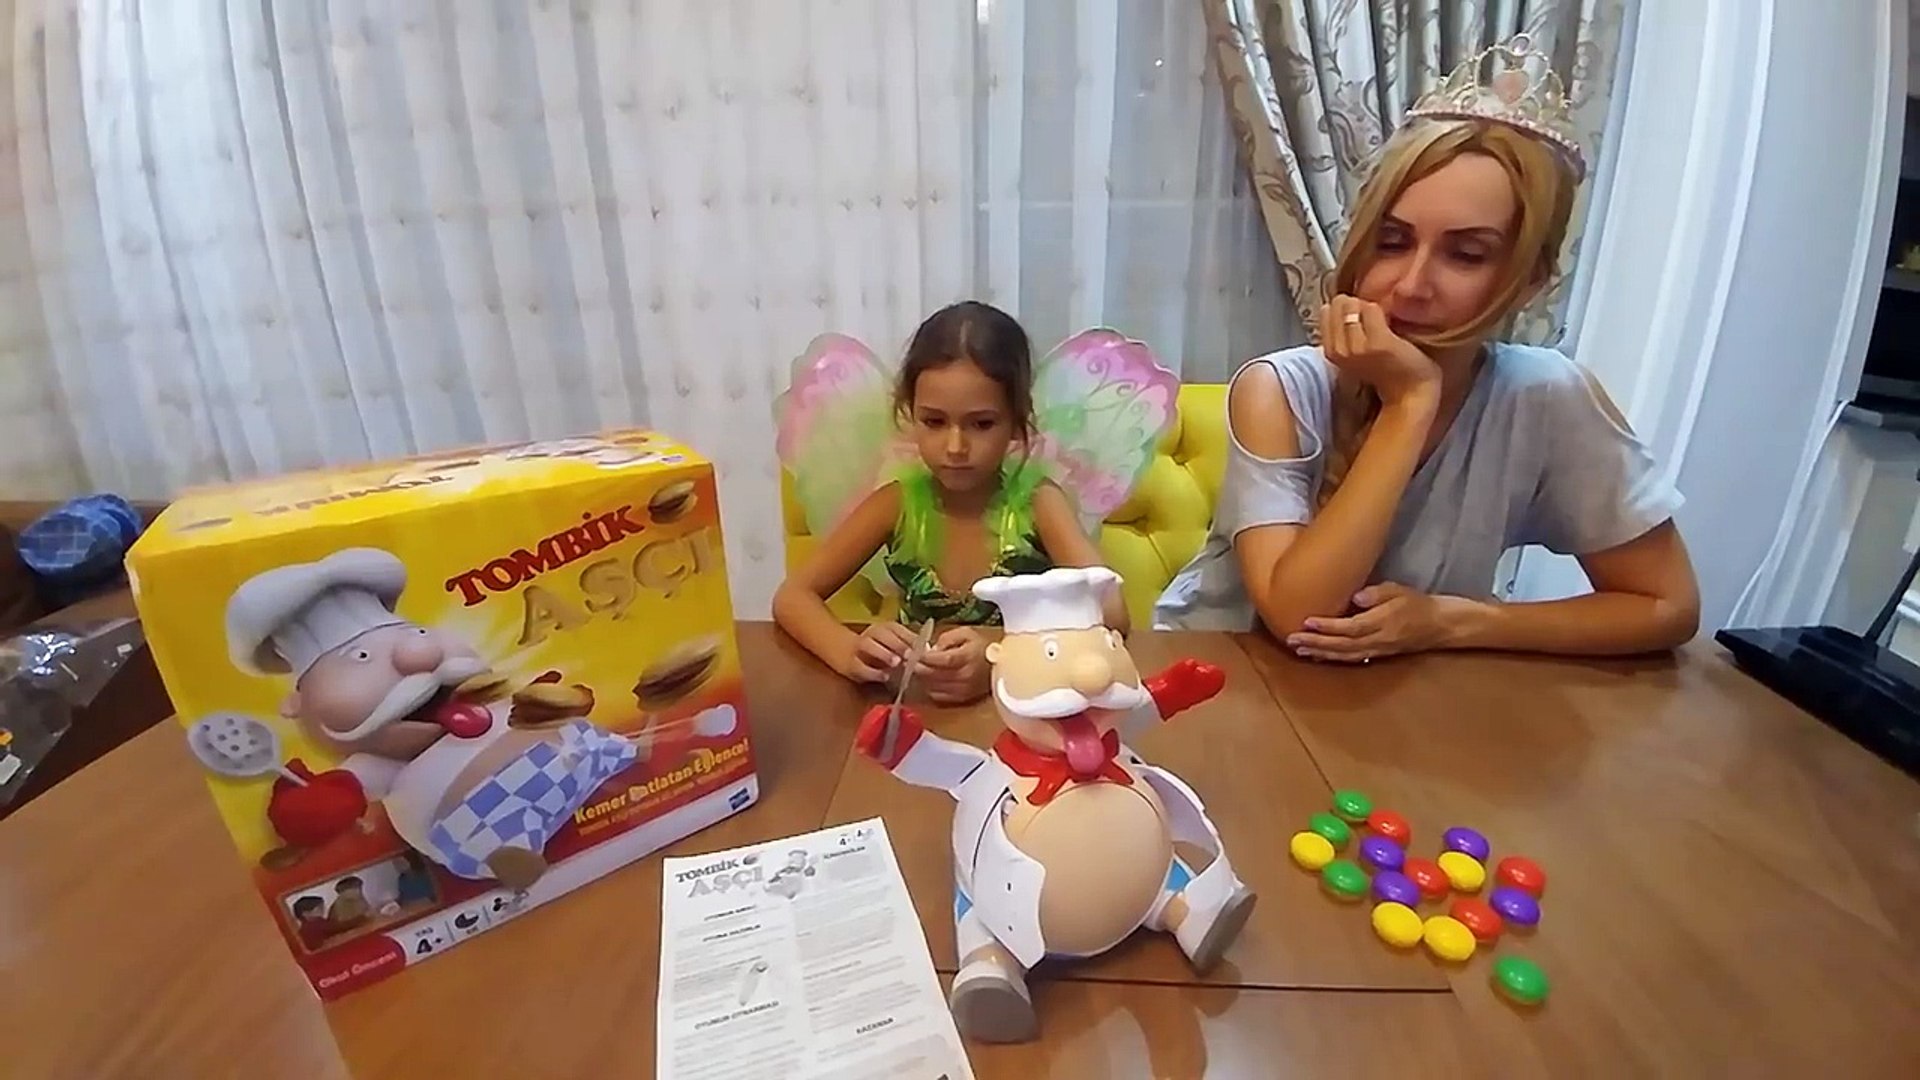 TOMBİK AŞÇI Obur aşçıda diyebiliriz.eğlenceli oyuncak, toys unboxing -  Dailymotion Video